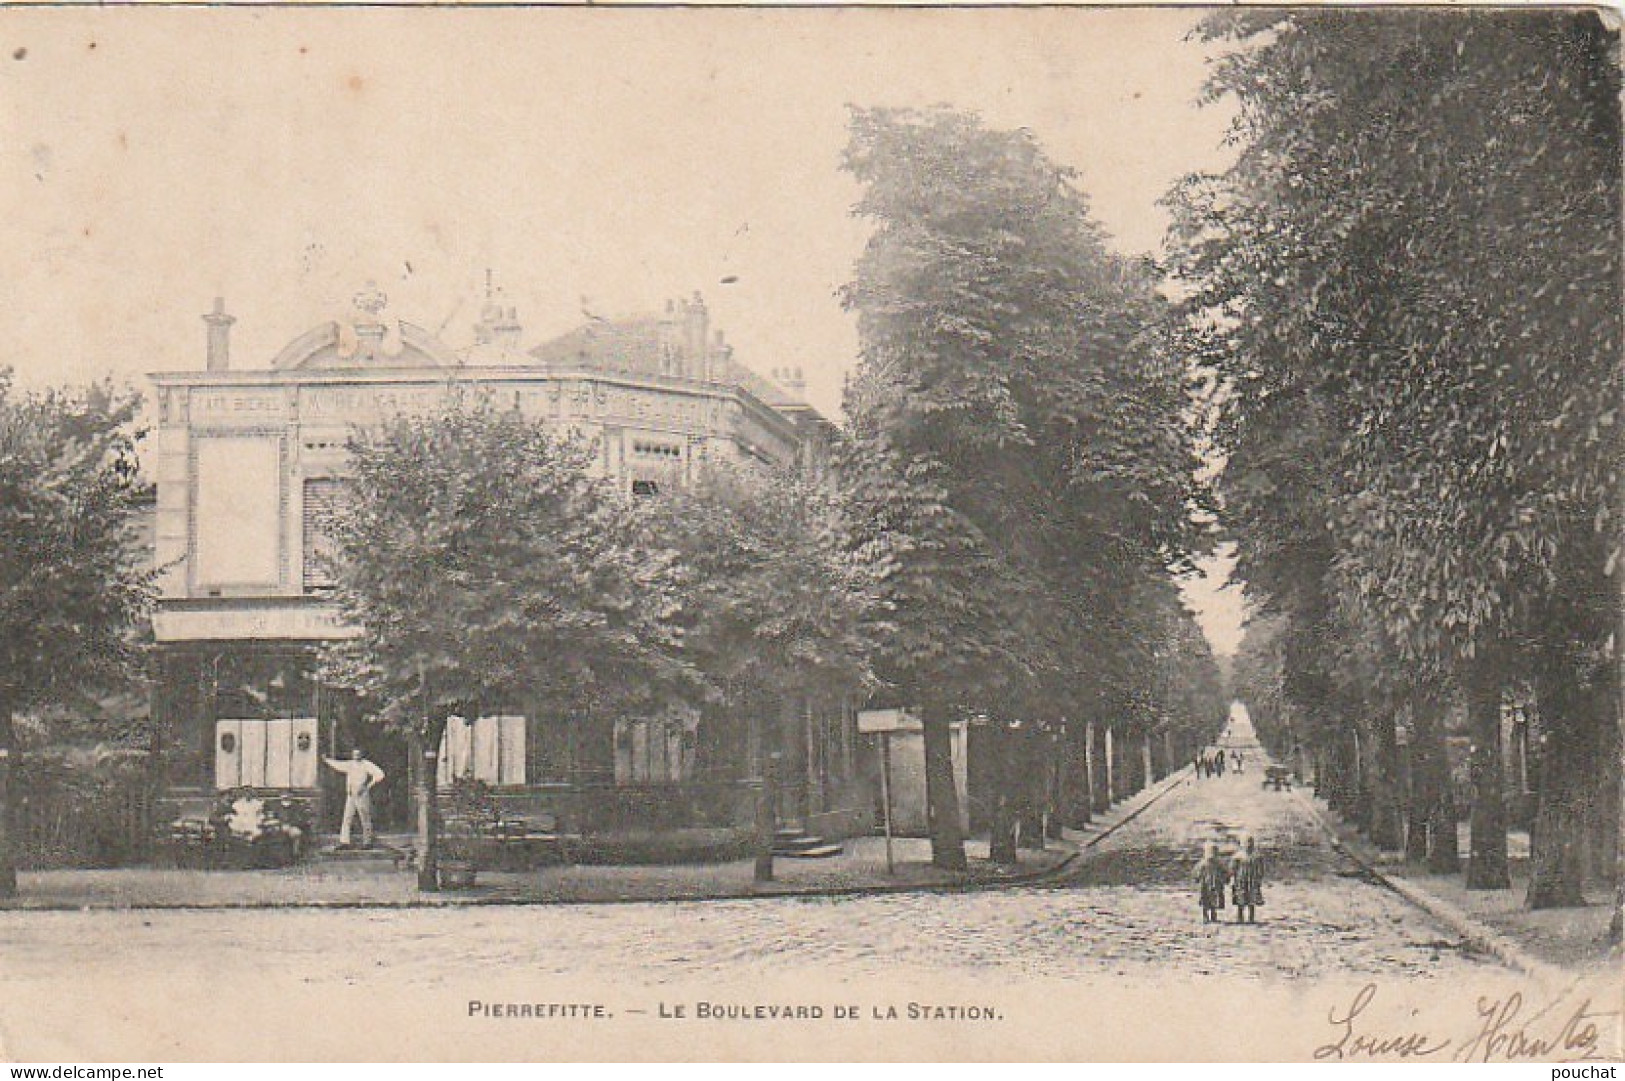 MO 5-(93) PIERREFITTE - LE BOULEVARD DE LA STATION - CAFE  - 2 SCANS - Pierrefitte Sur Seine